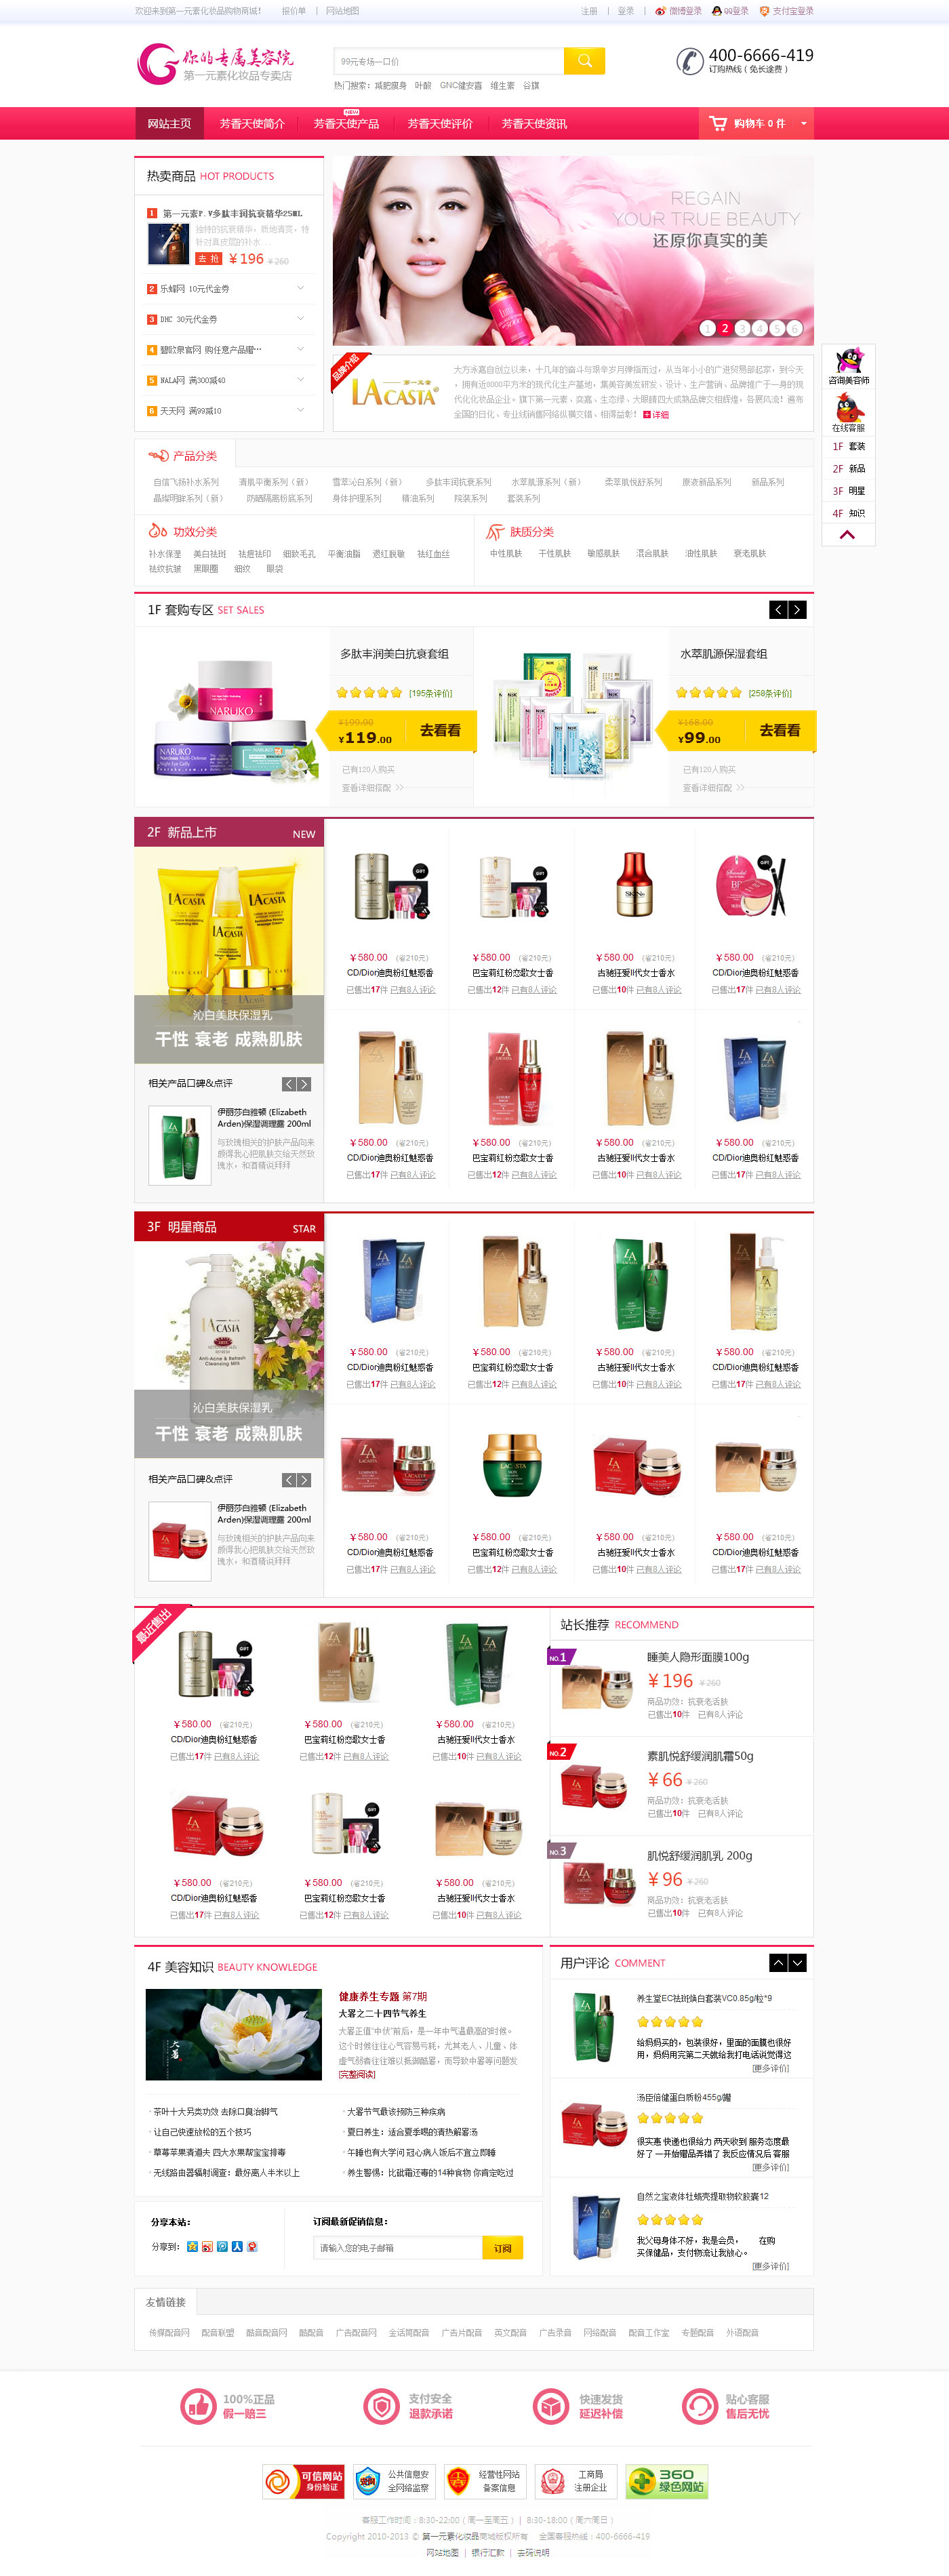 原创化妆品商城网站设计PSD网站模板源码